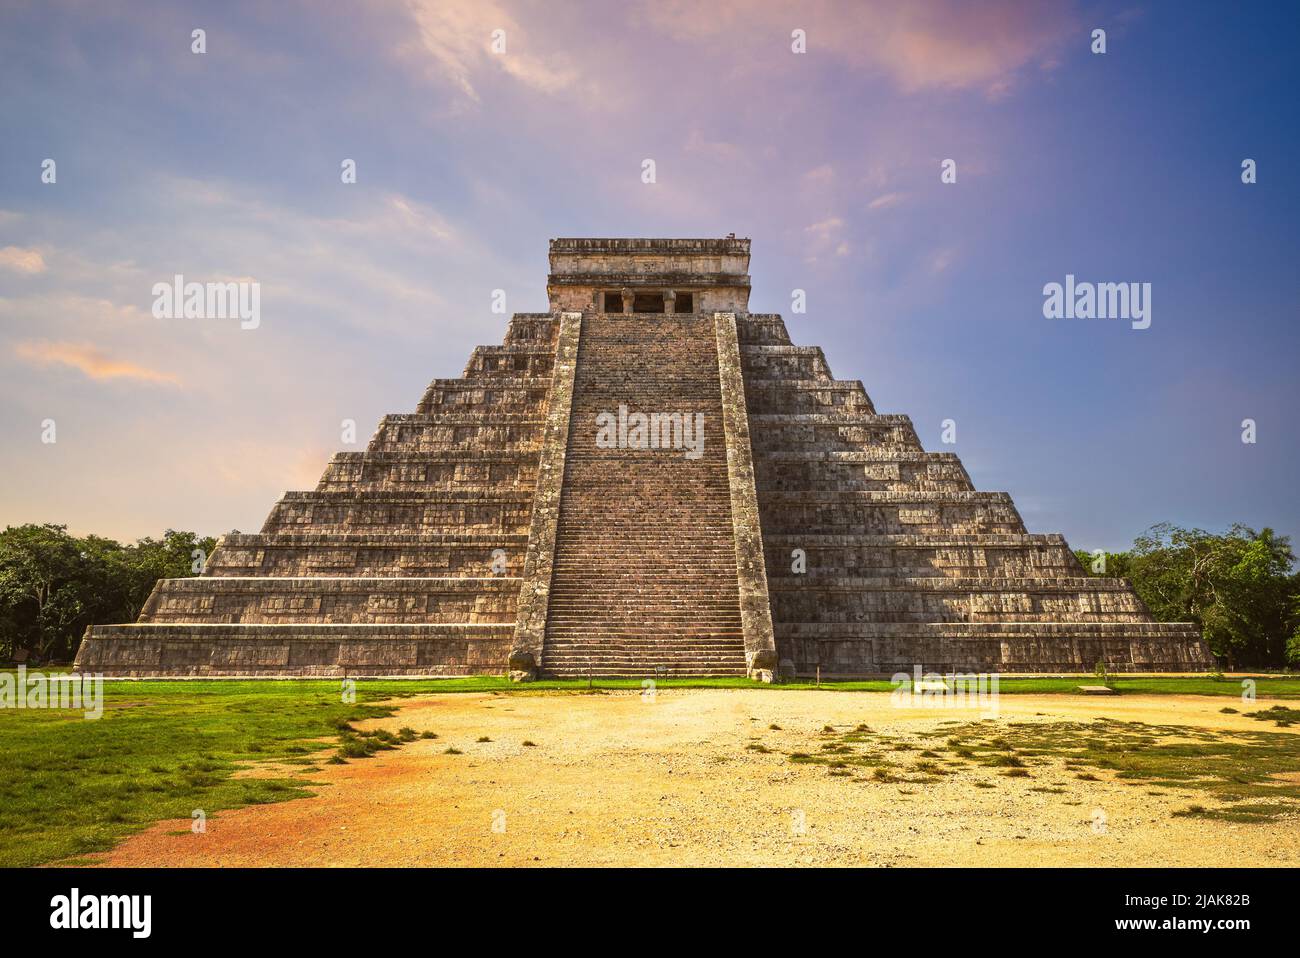 El Castillo, Temple of Kukulcan, Chichen Itza, mexico Stock Photo